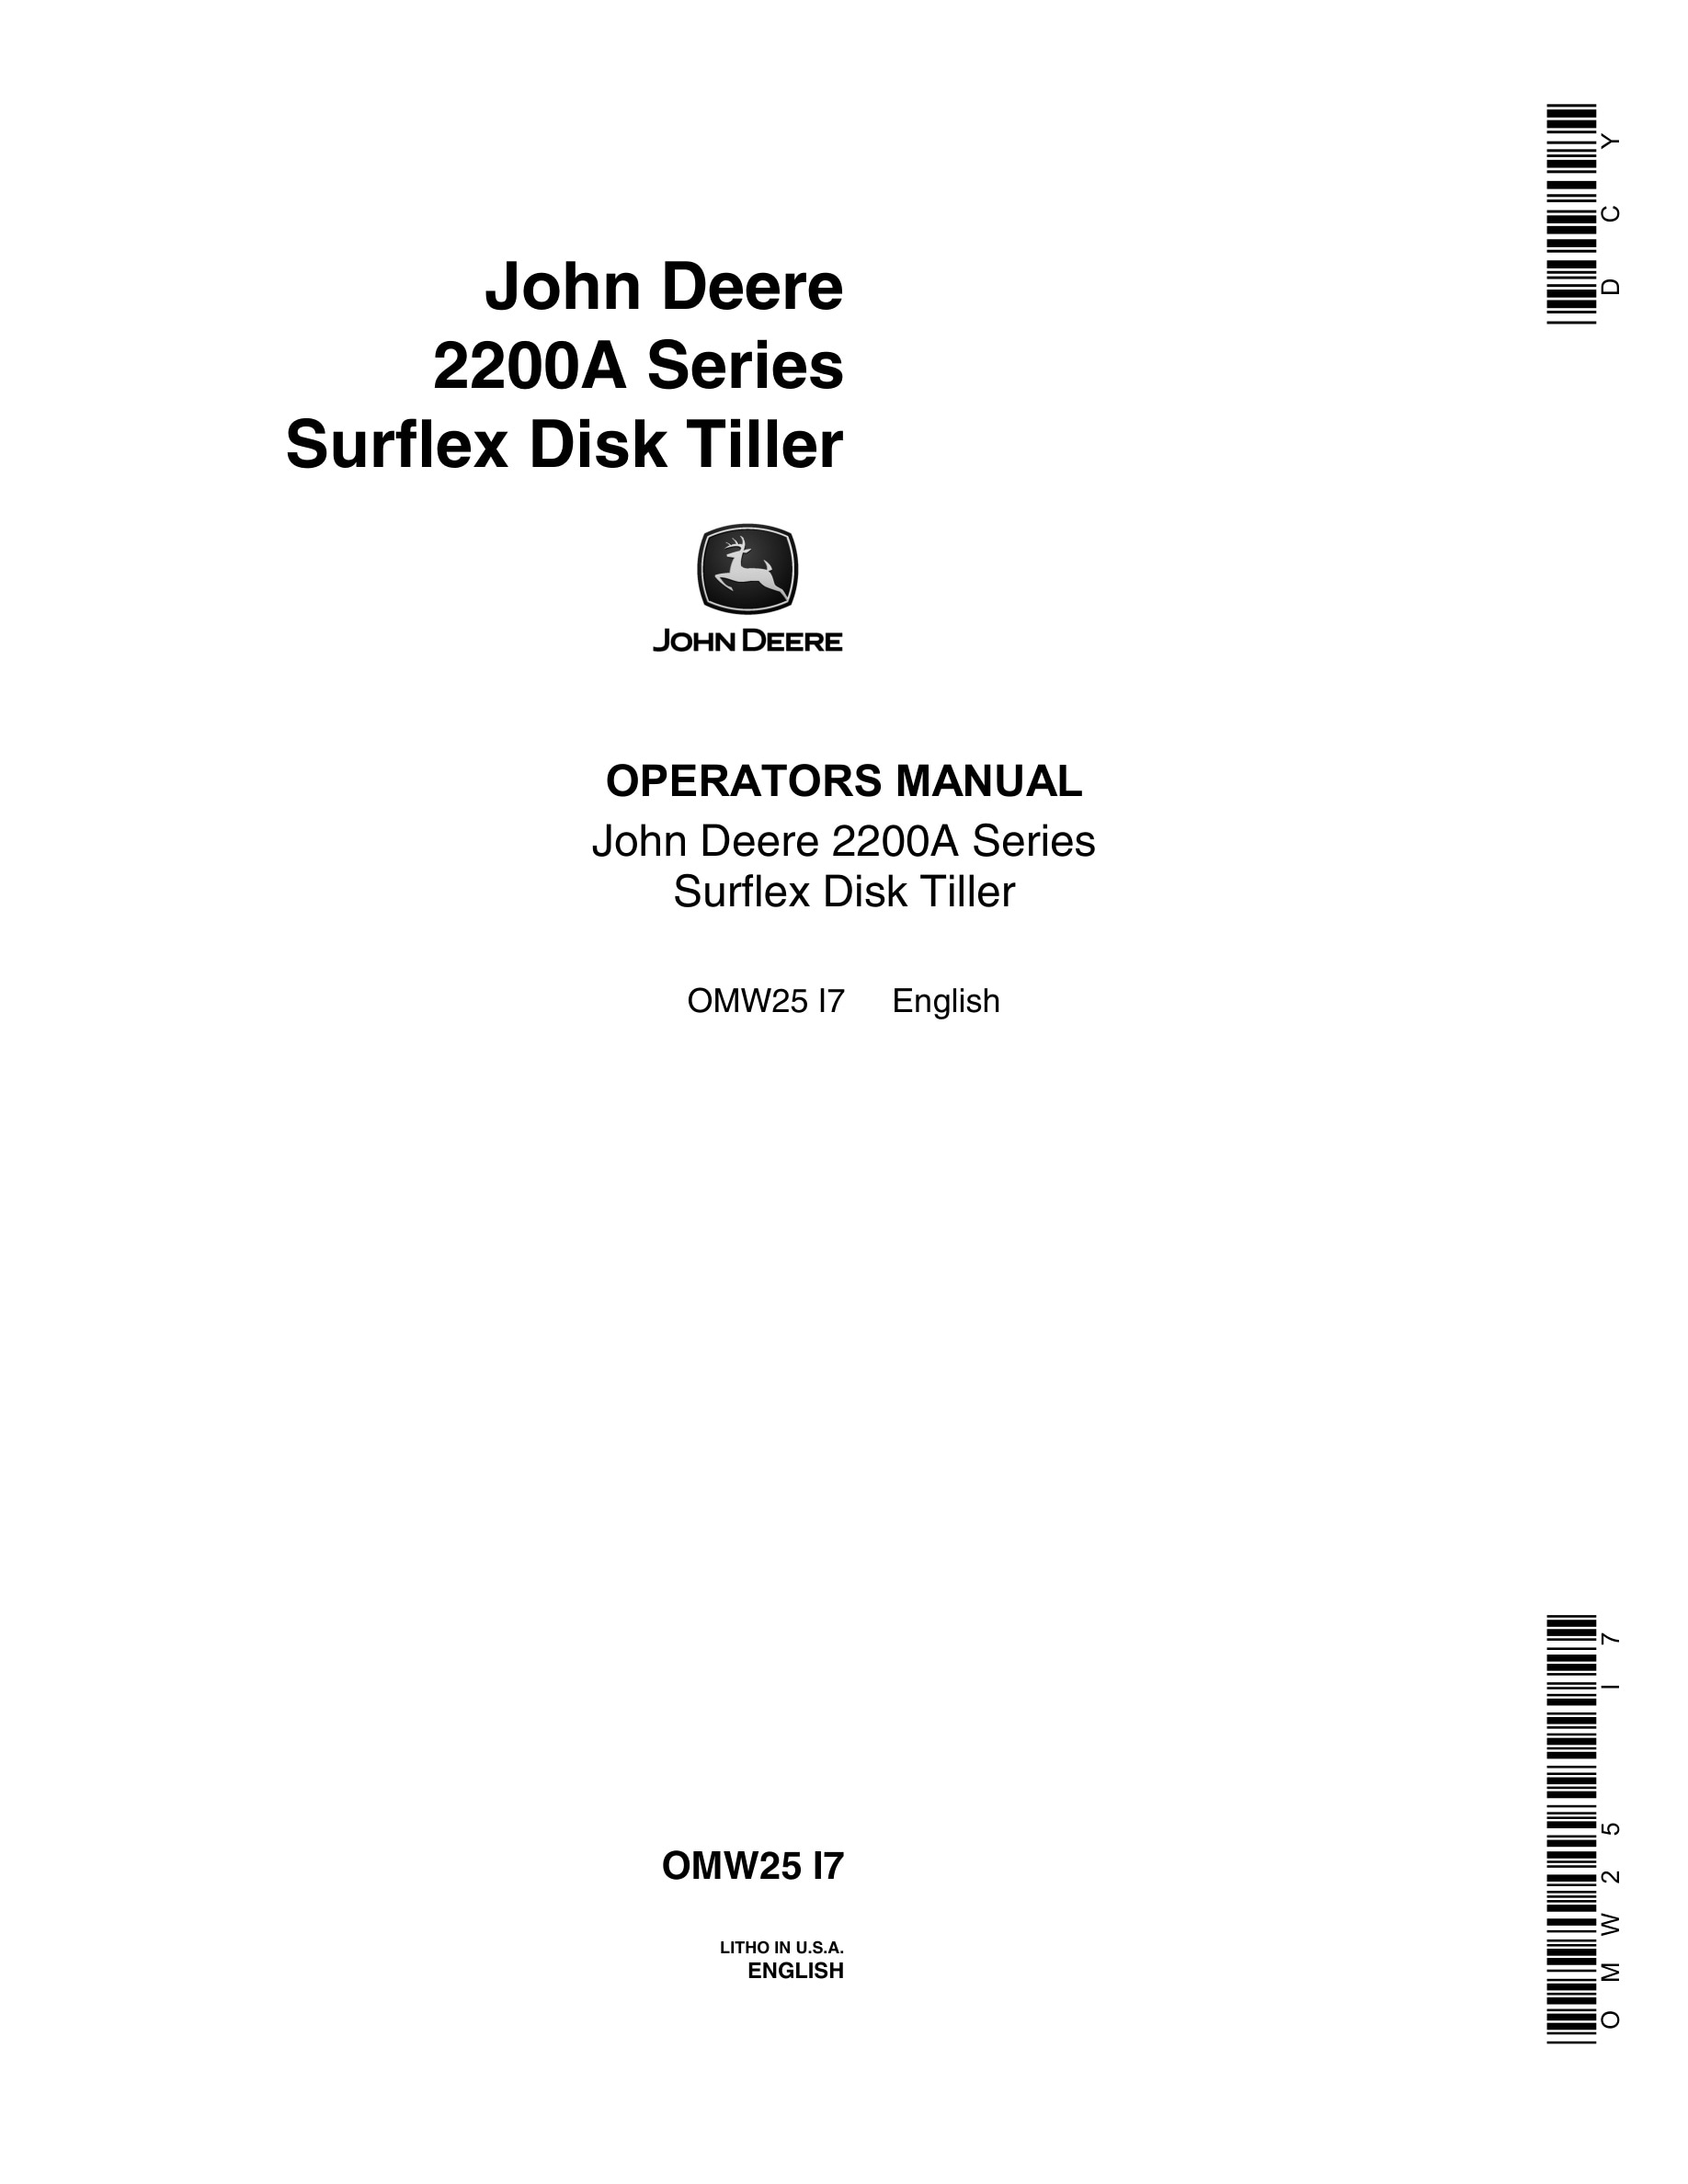 John Deere 2200A Series Surflex Disk Tiller Operator Manual OMW25-1